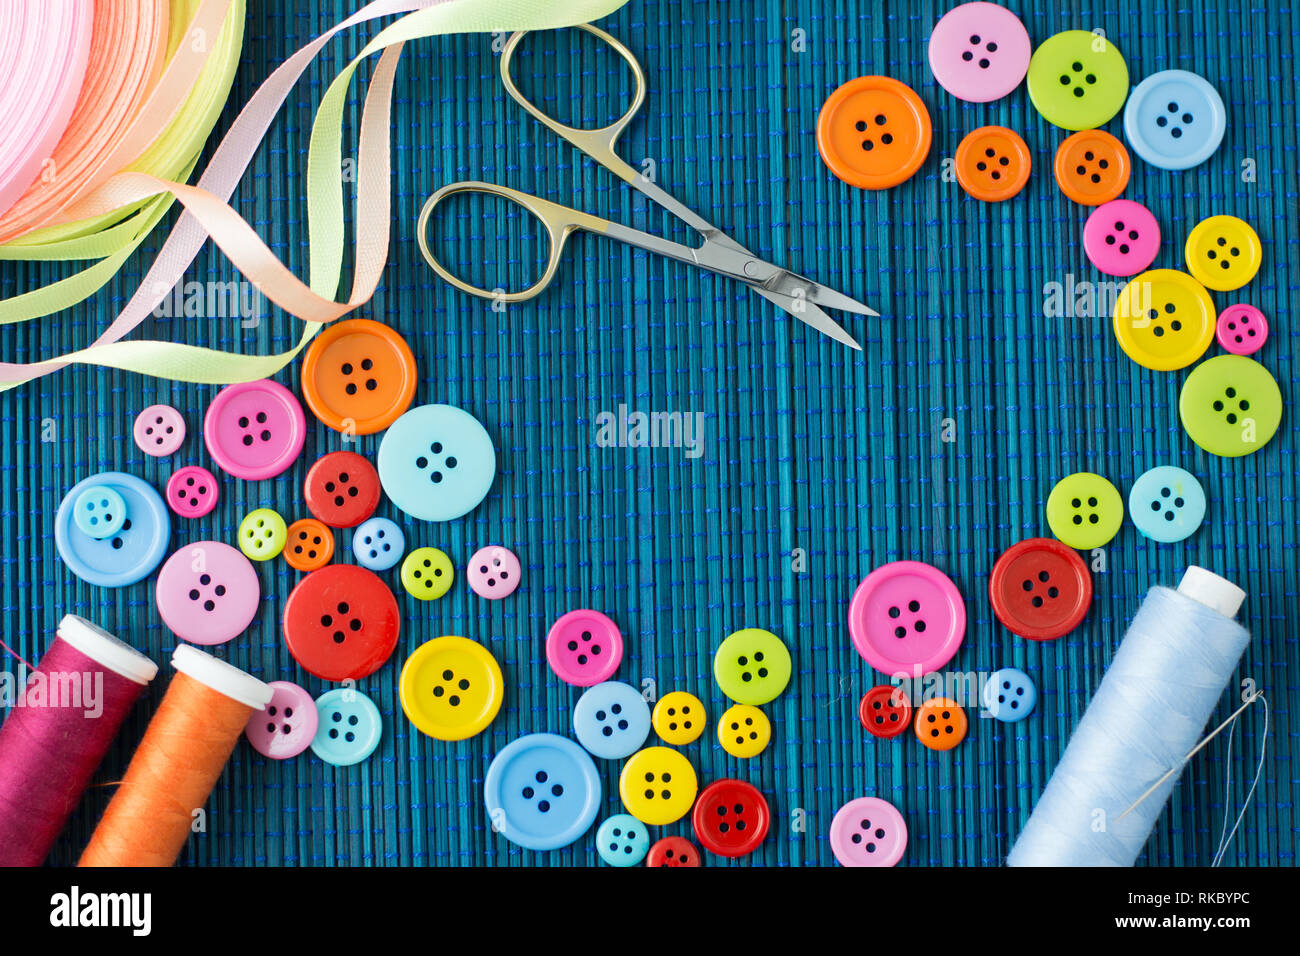 Anpassung der Ausstattung: Viele bunte Buttons, Fäden, Bänder, Scheren und eine Nadel auf ein dunkles Blau Strohmatte-text-Raum Stockfoto